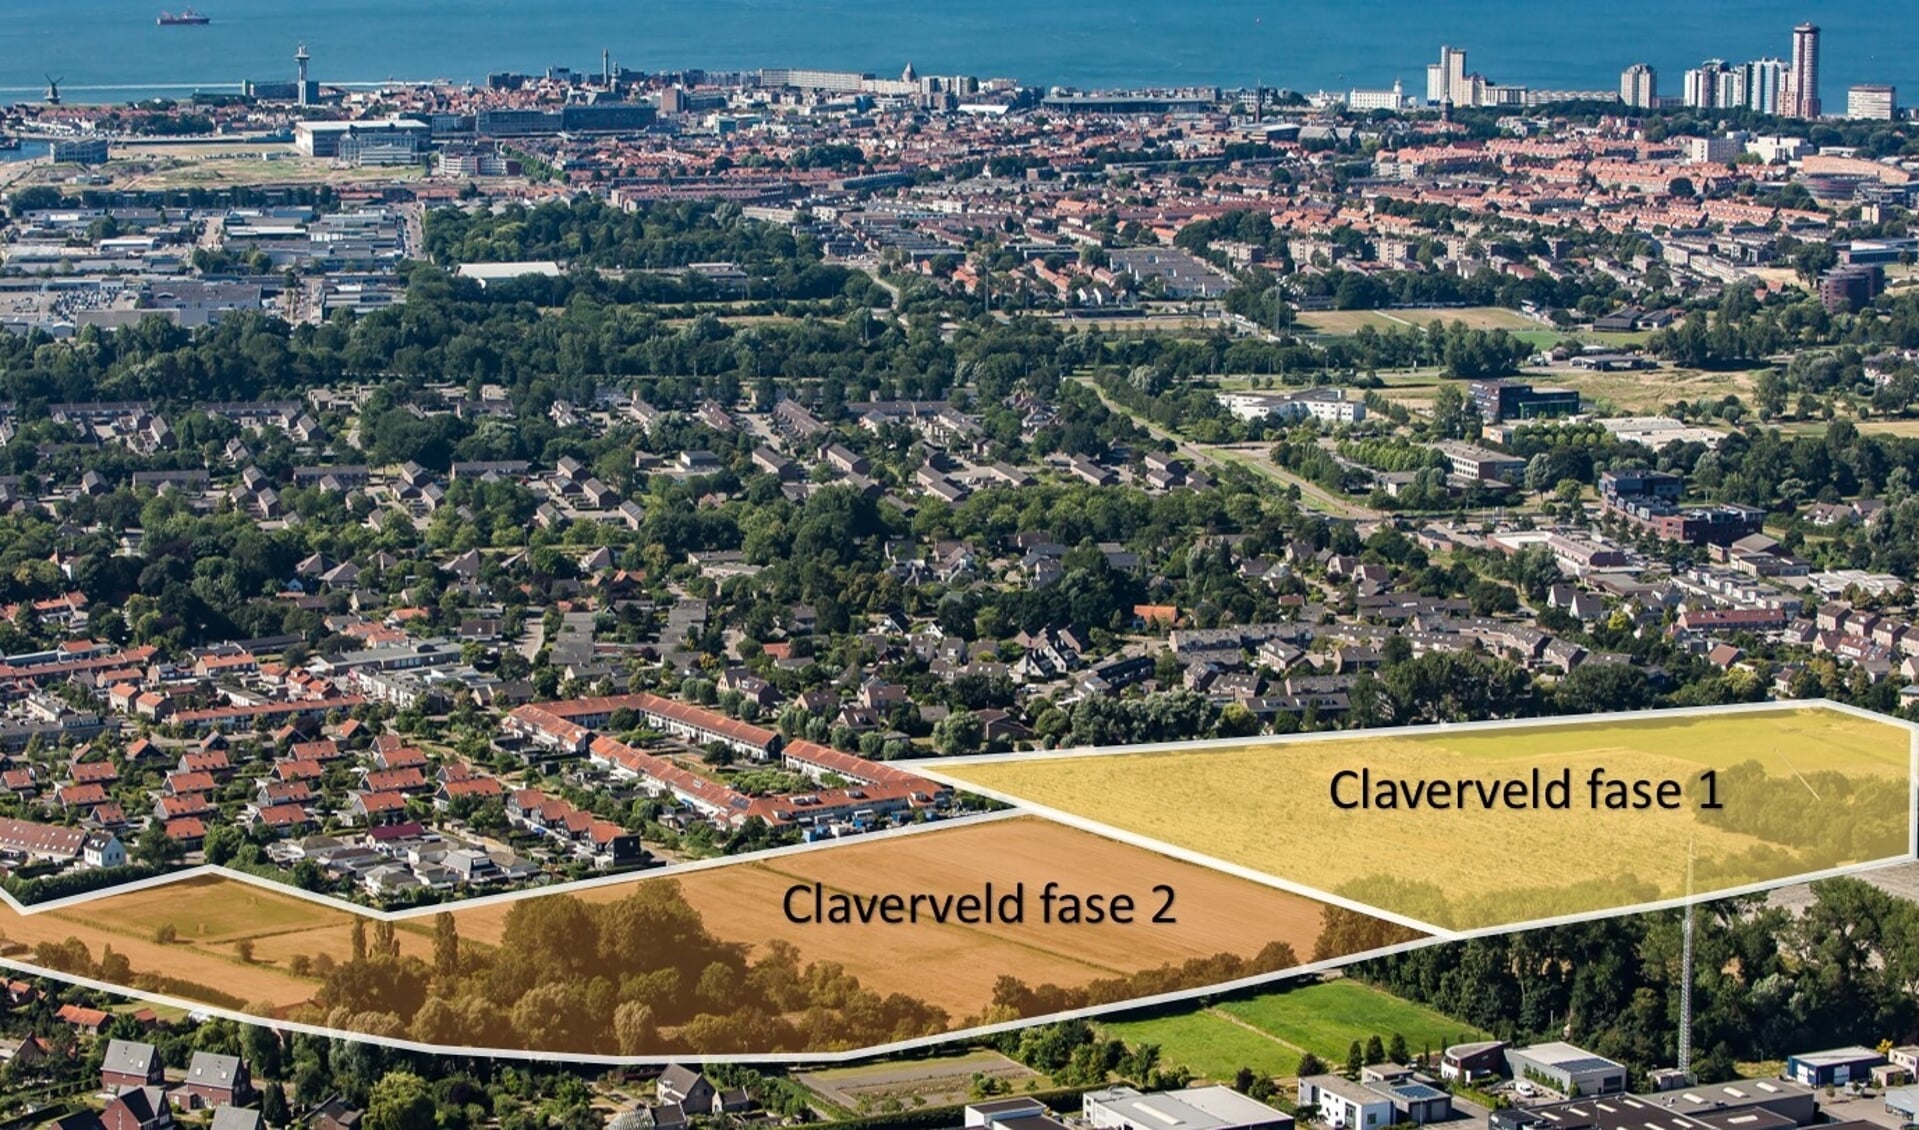 De nieuwe wijk Claverveld bestaat uit twee fases.